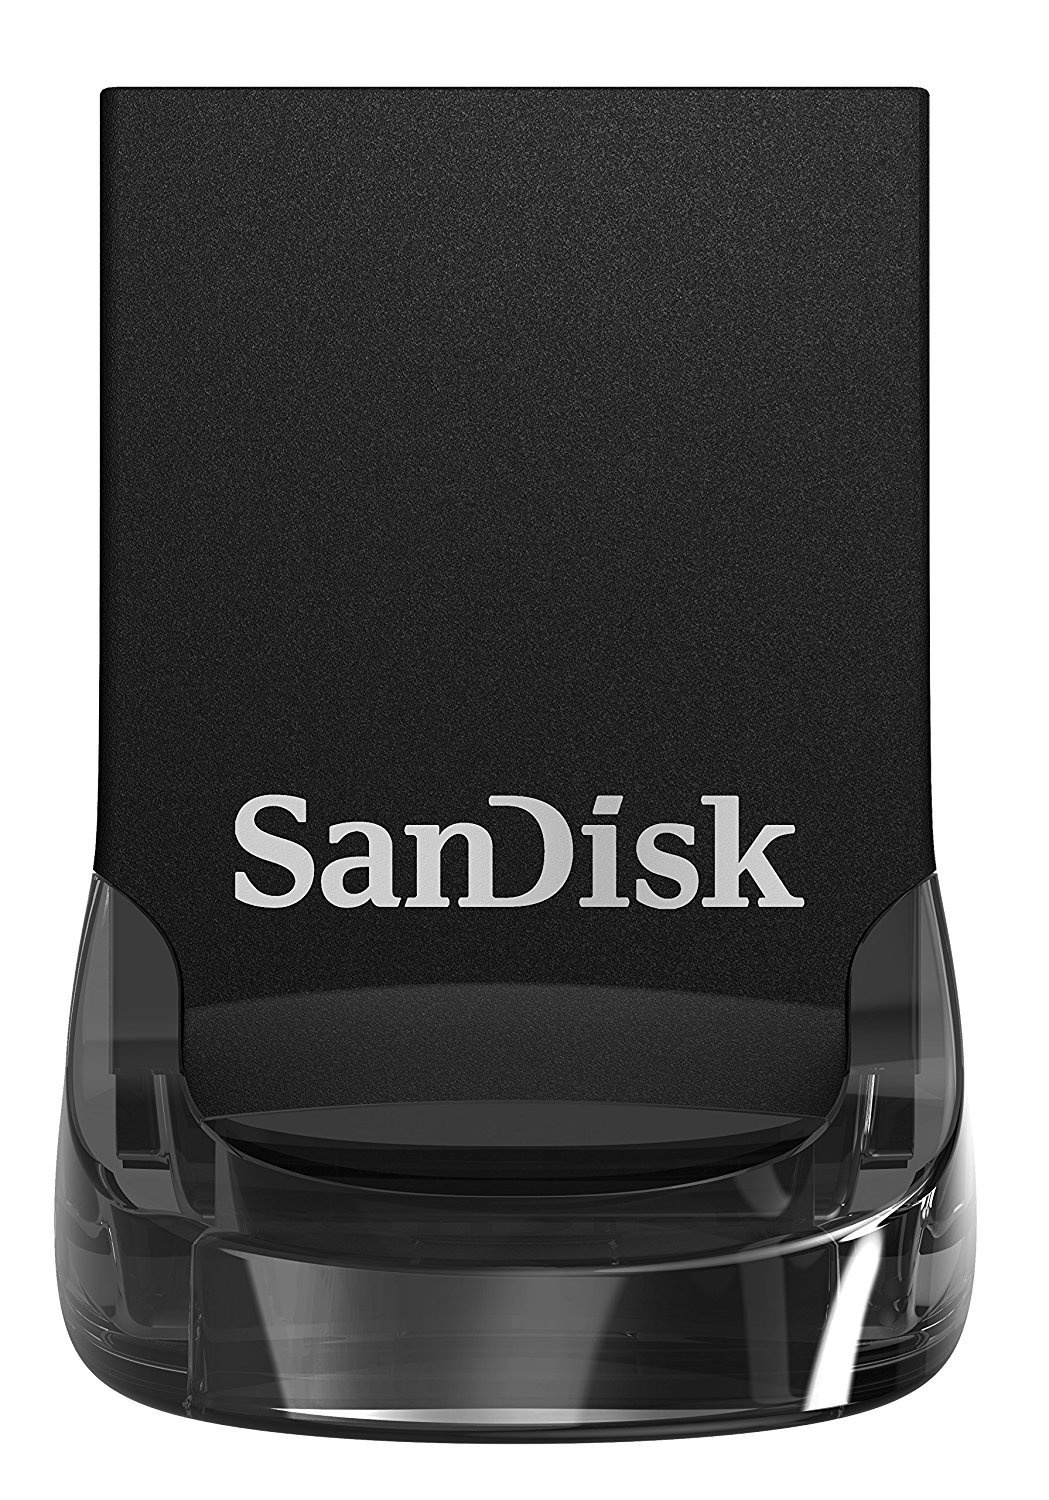  Накопичувач USB 3.1 SANDISK Ultra Fit 128GB (SDCZ430-128G-G46) фото